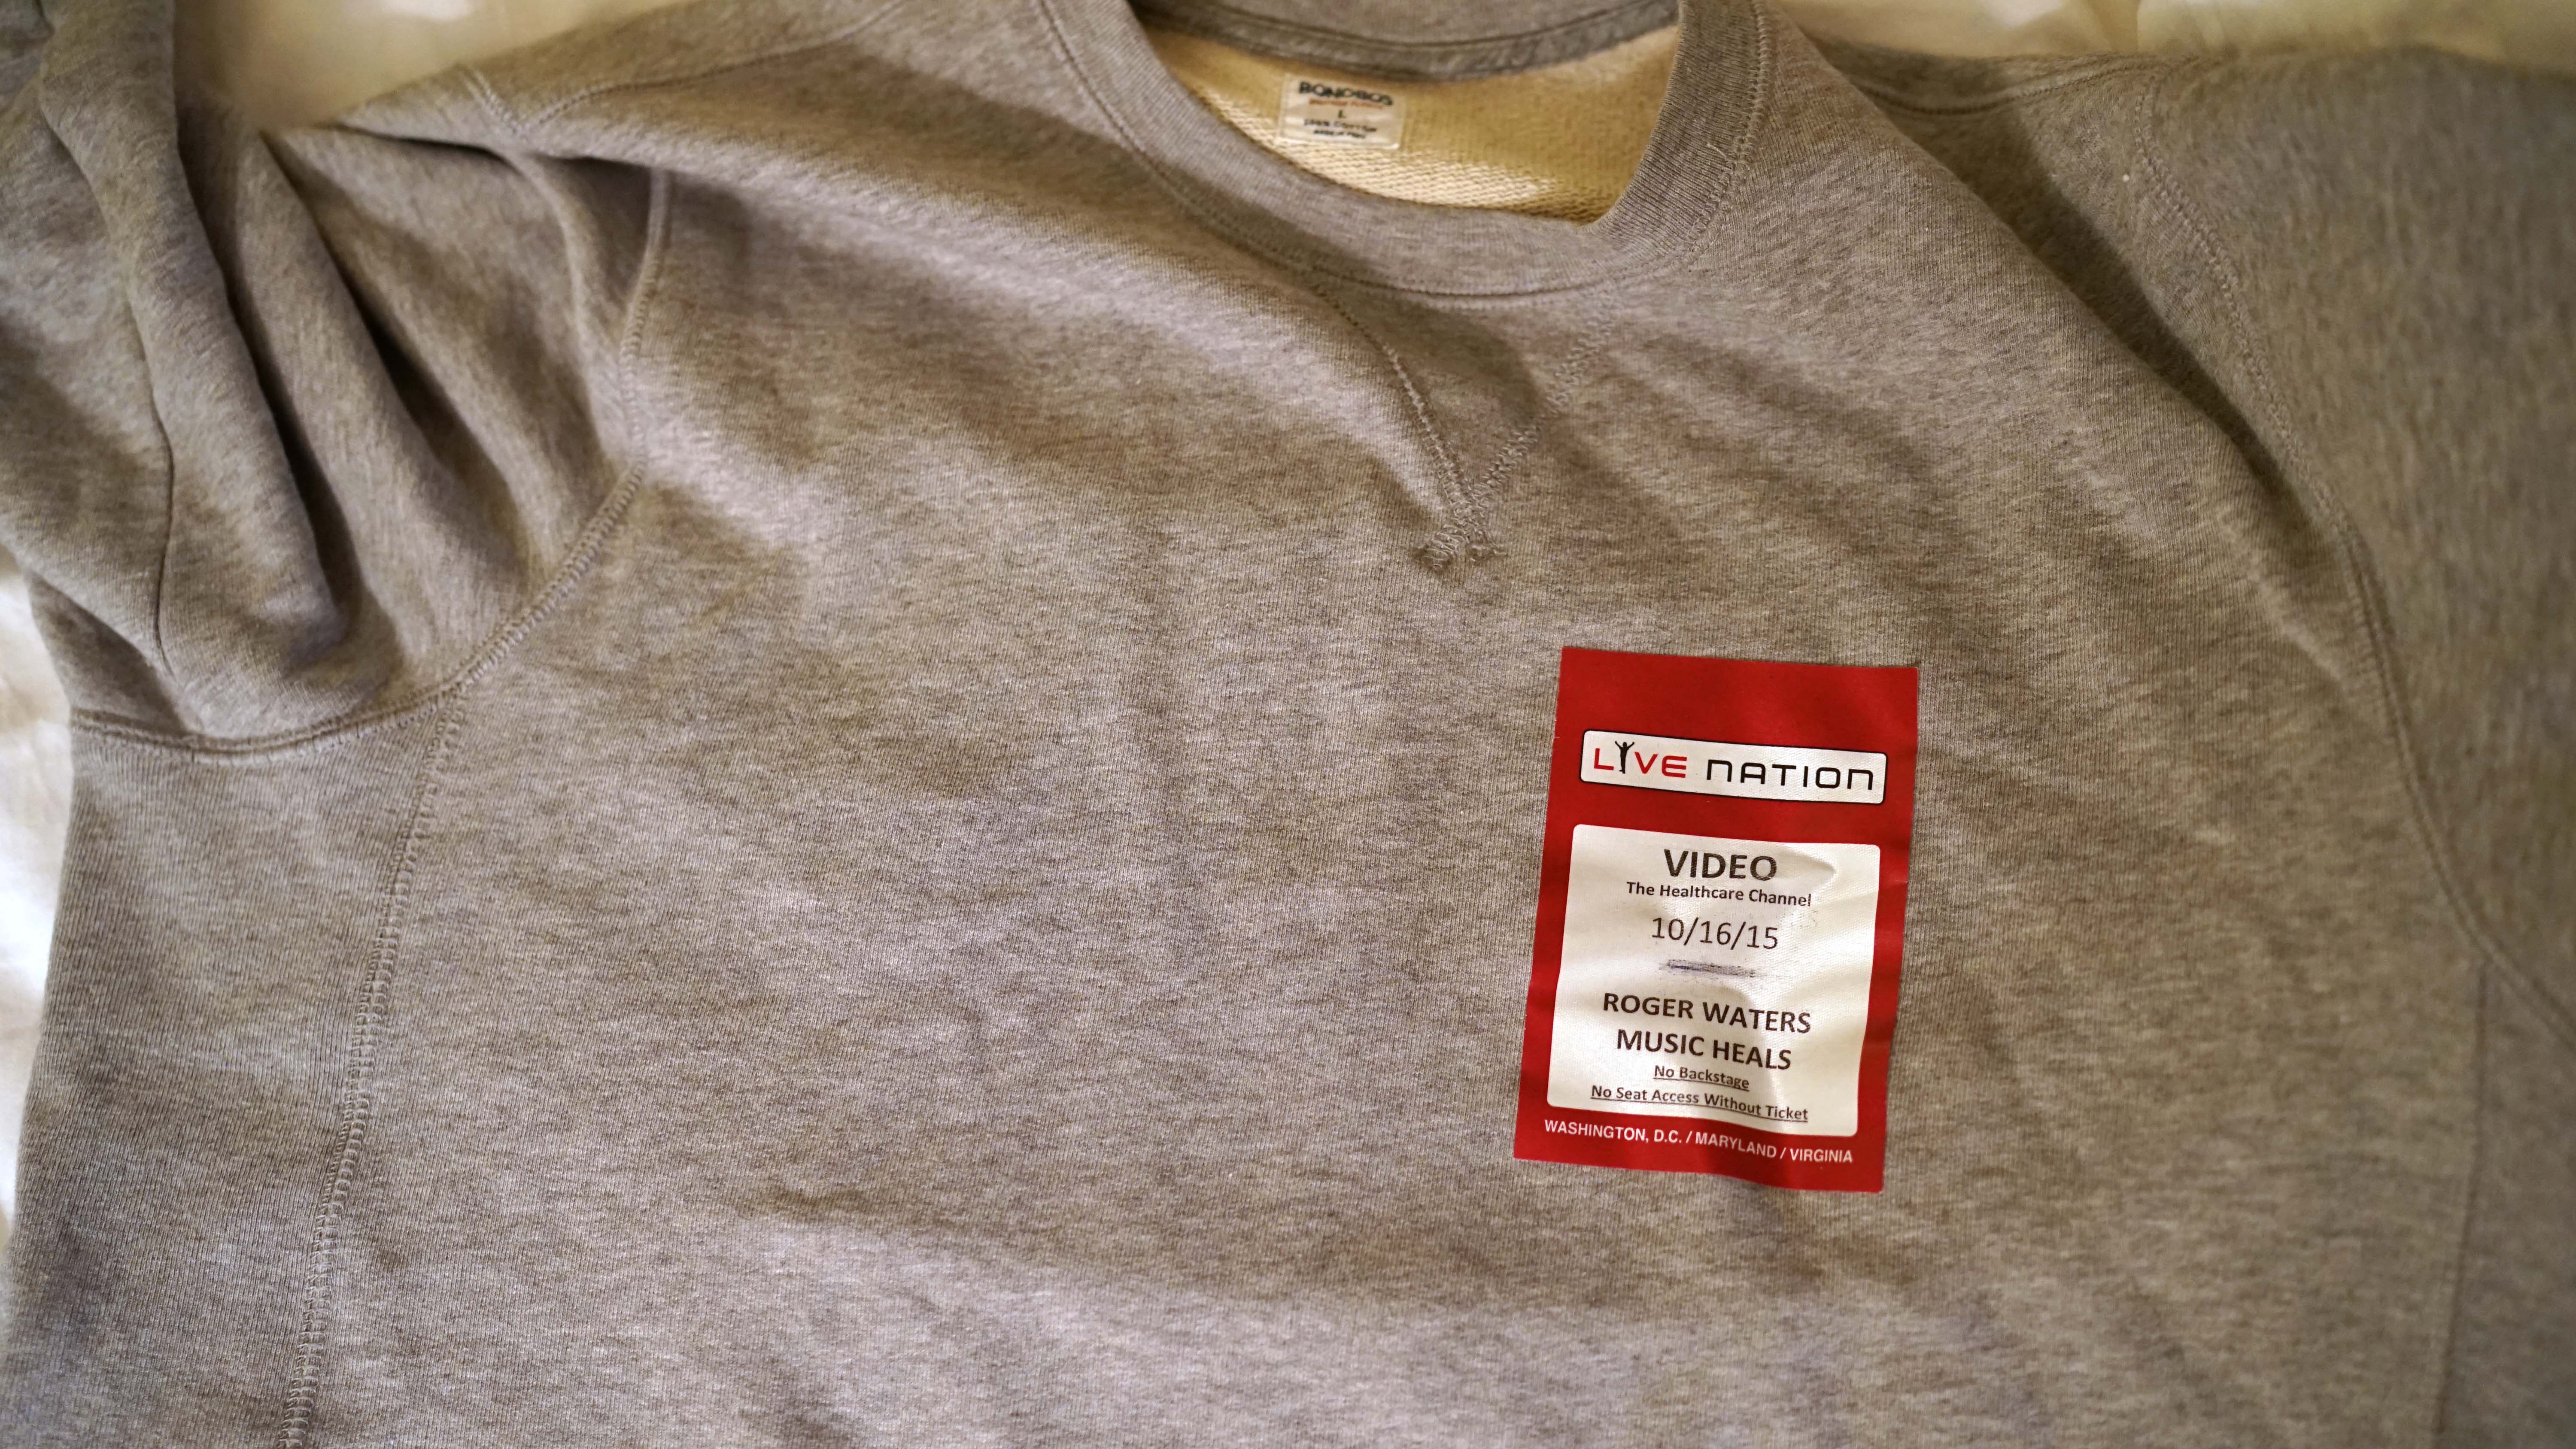 MusiCorp shirt and press tag